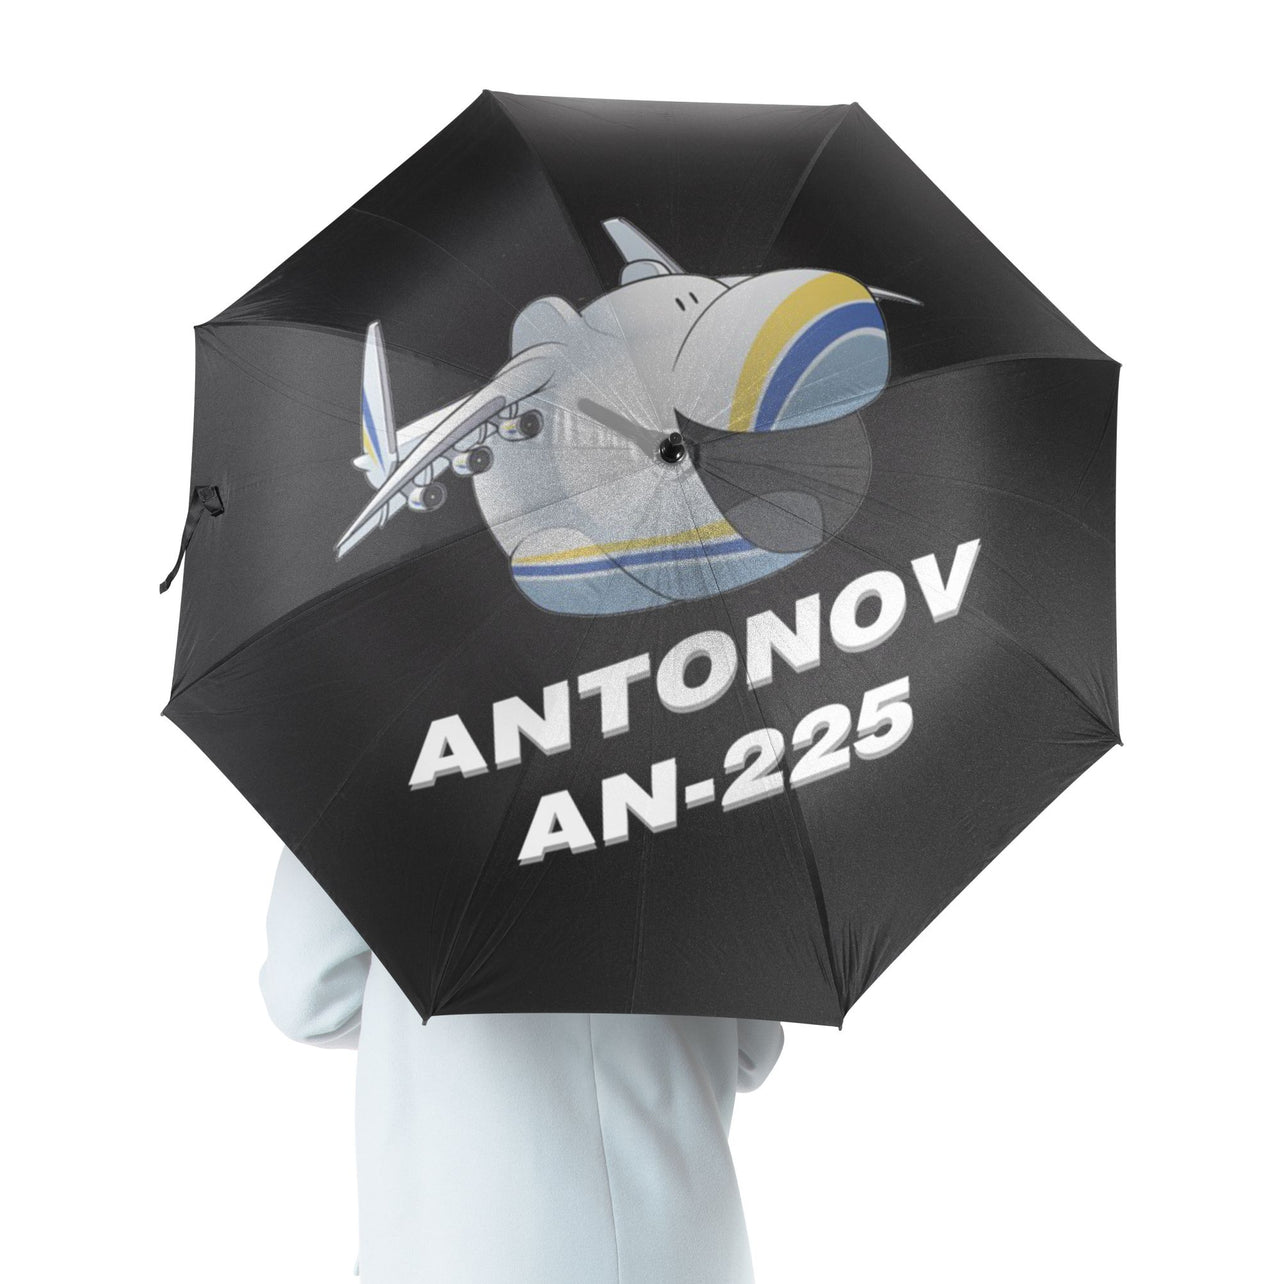 Antonov AN-225 (23) Designed Umbrella